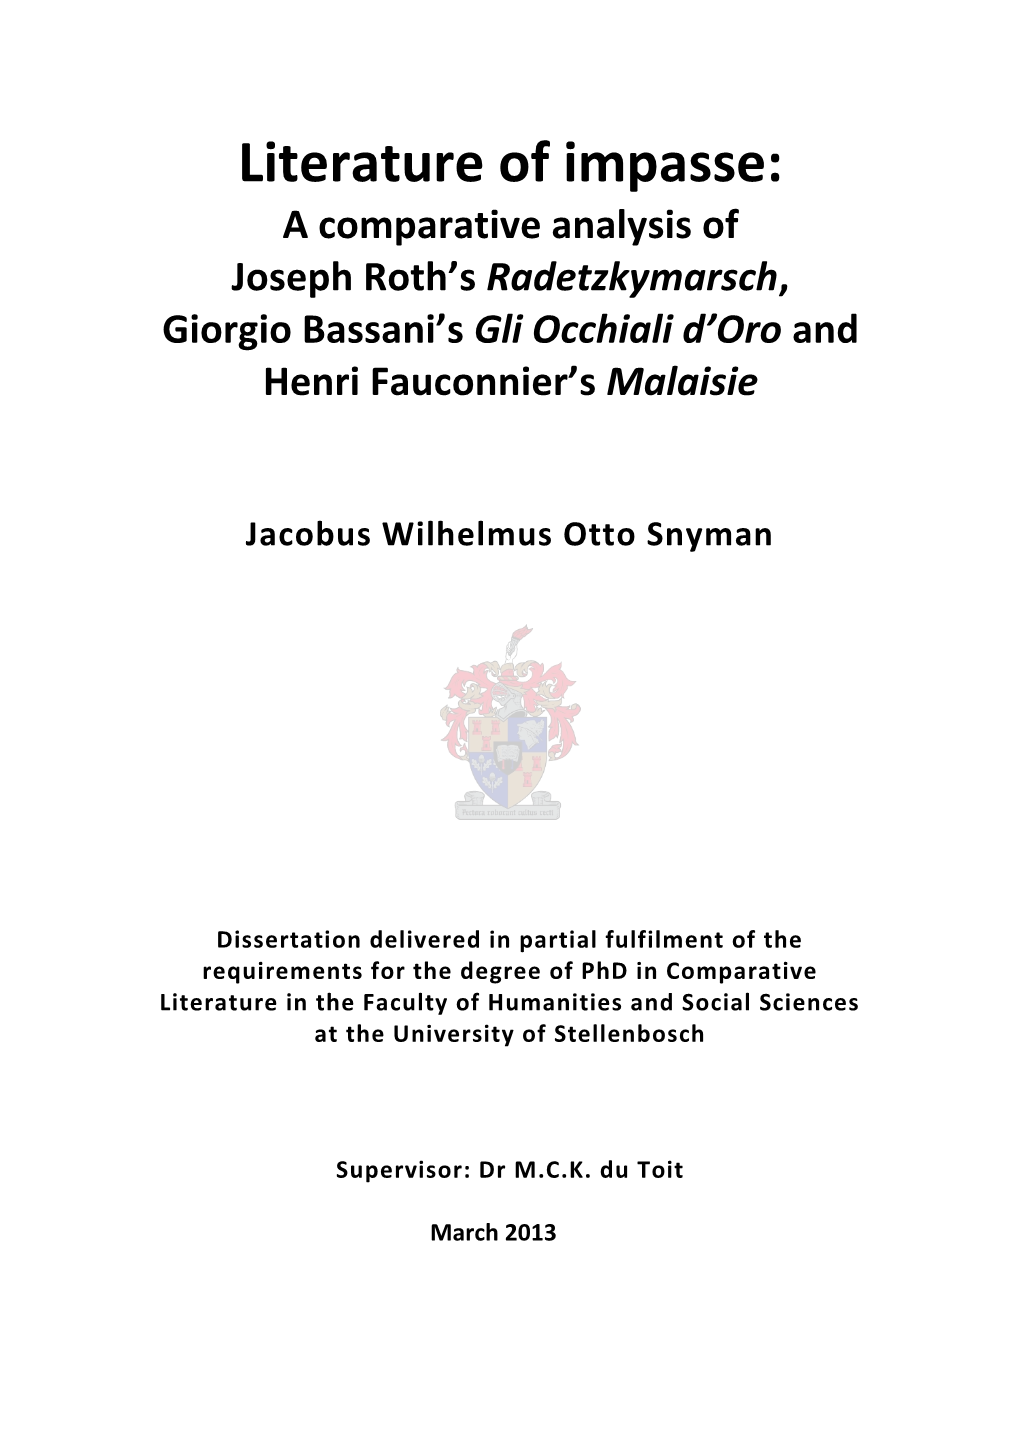 Literature of Impasse: a Comparative Analysis of Joseph Roth’S Radetzkymarsch, Giorgio Bassani’S Gli Occhiali D’Oro and Henri Fauconnier’S Malaisie